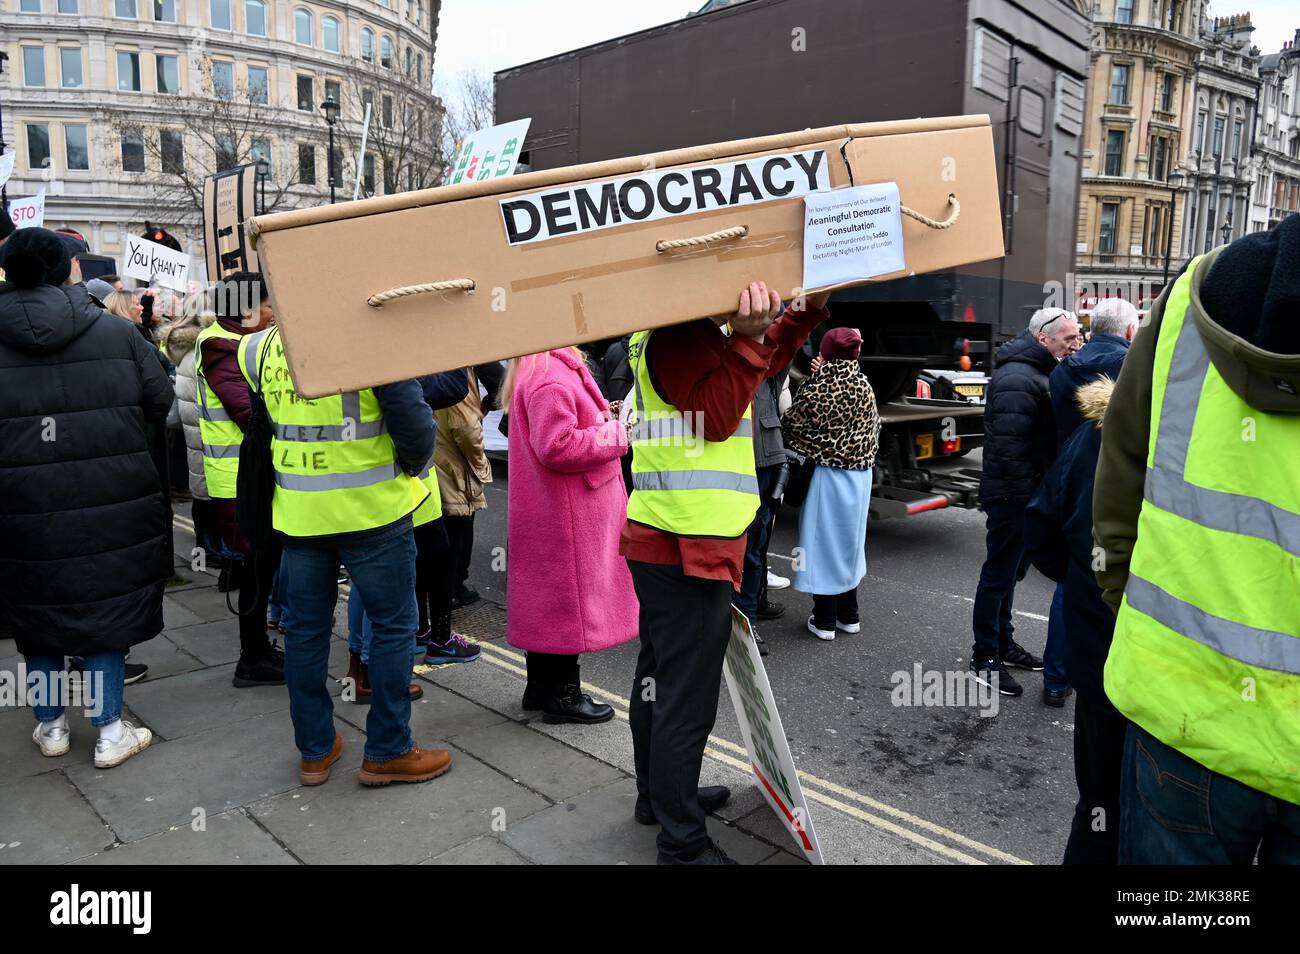 Londra, Regno Unito. Protesta contro la proposta del sindaco Sadiq Khan di ampliare le zone ULEZ a Londra. Credit: michael melia/Alamy Live News Foto Stock